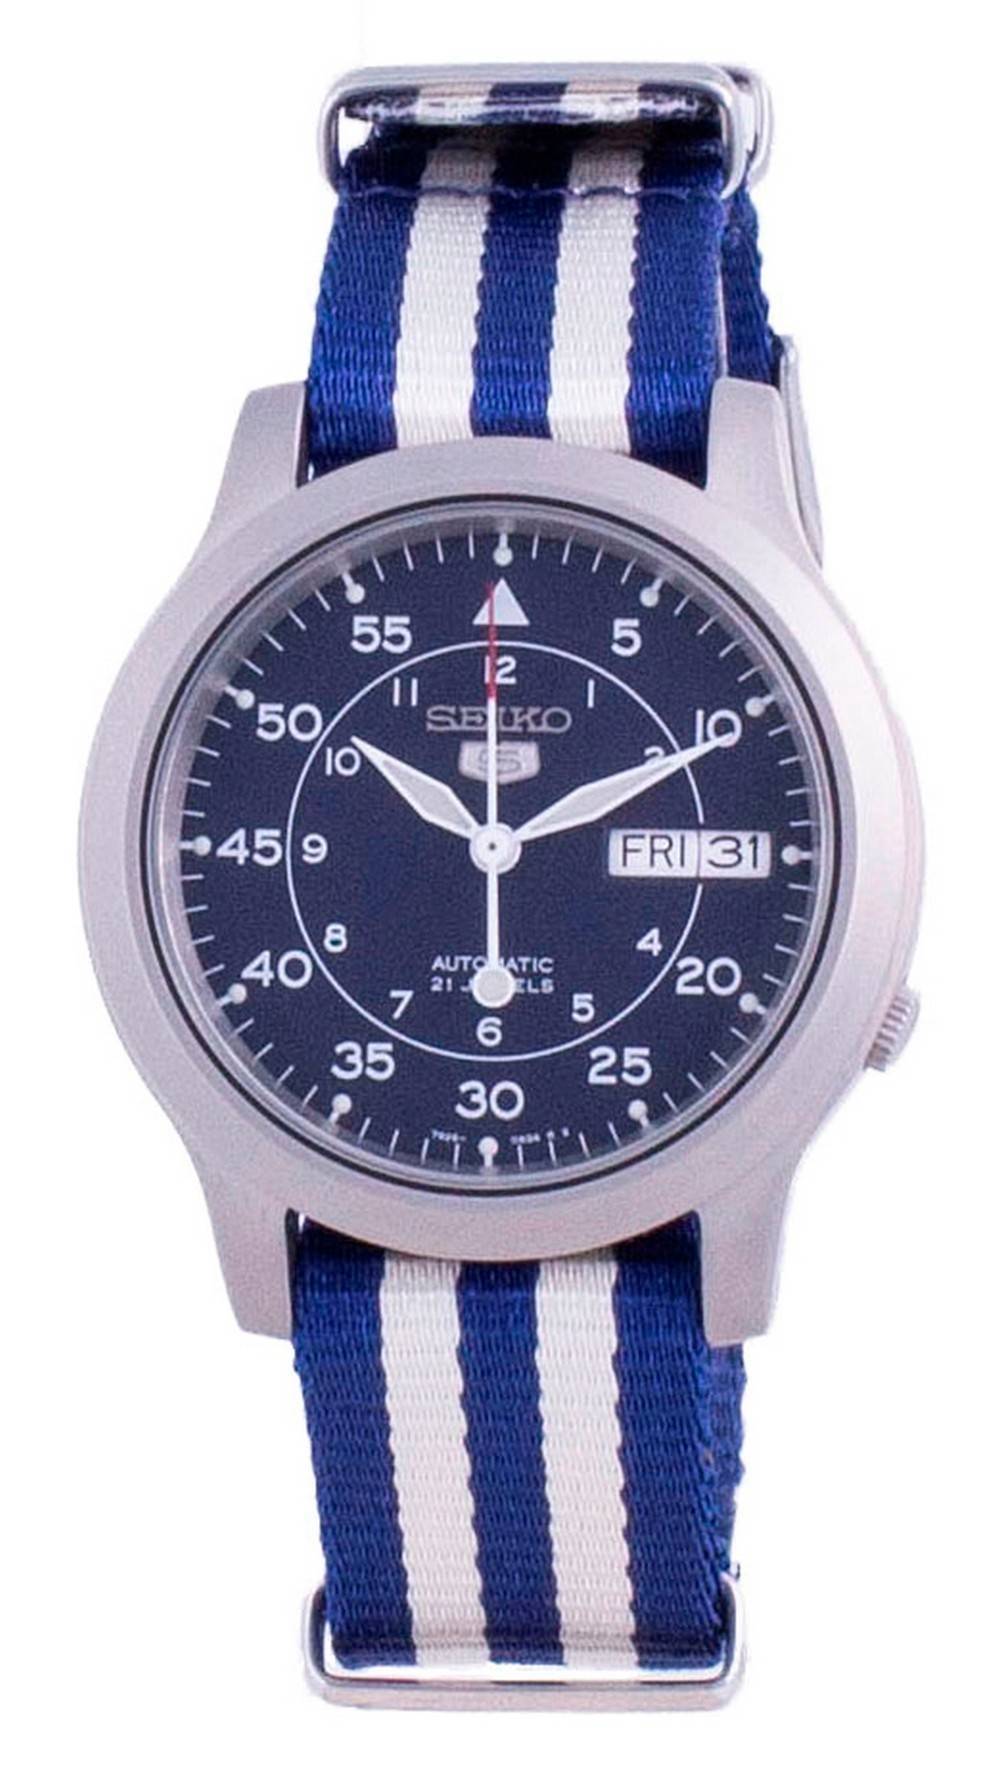 Đồng hồ nam dây đeo nylon tự động Seiko 5 Military SNK807K2-var-NATO17 vi